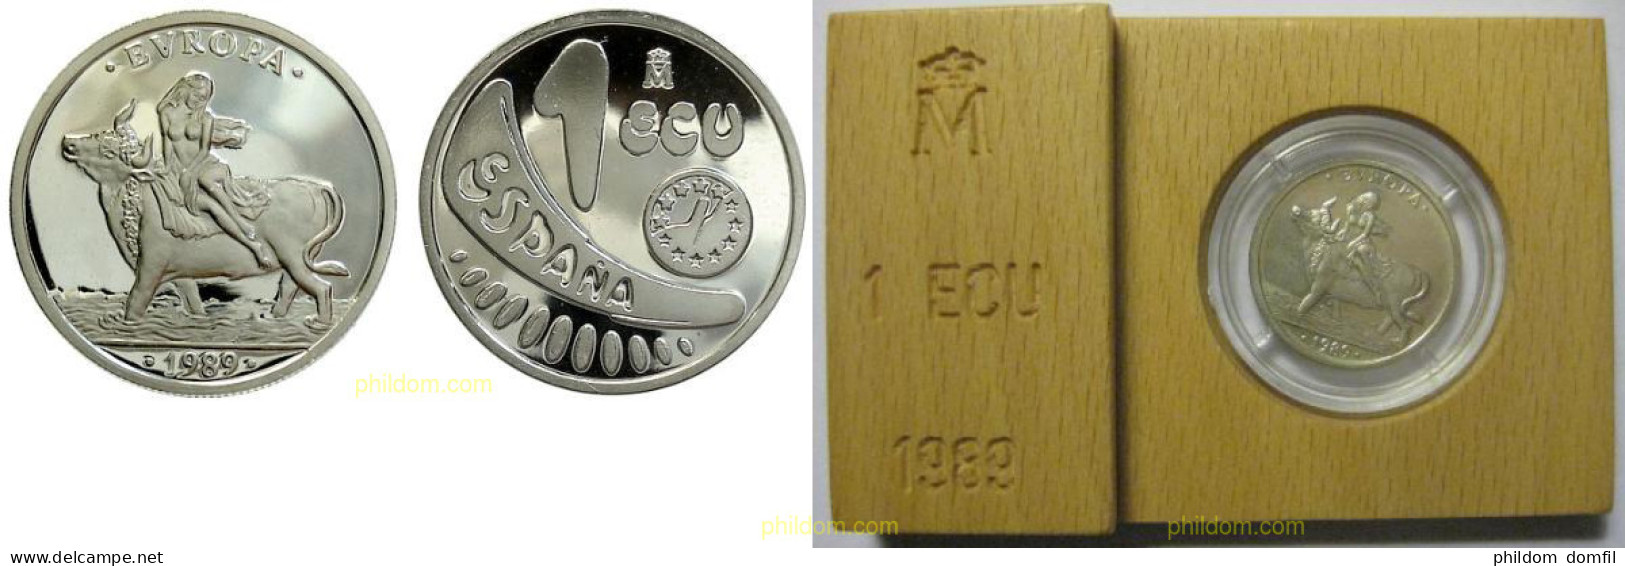 1424 ESPAÑA 1989 1 ECU 1989 PLATA - 10 Céntimos